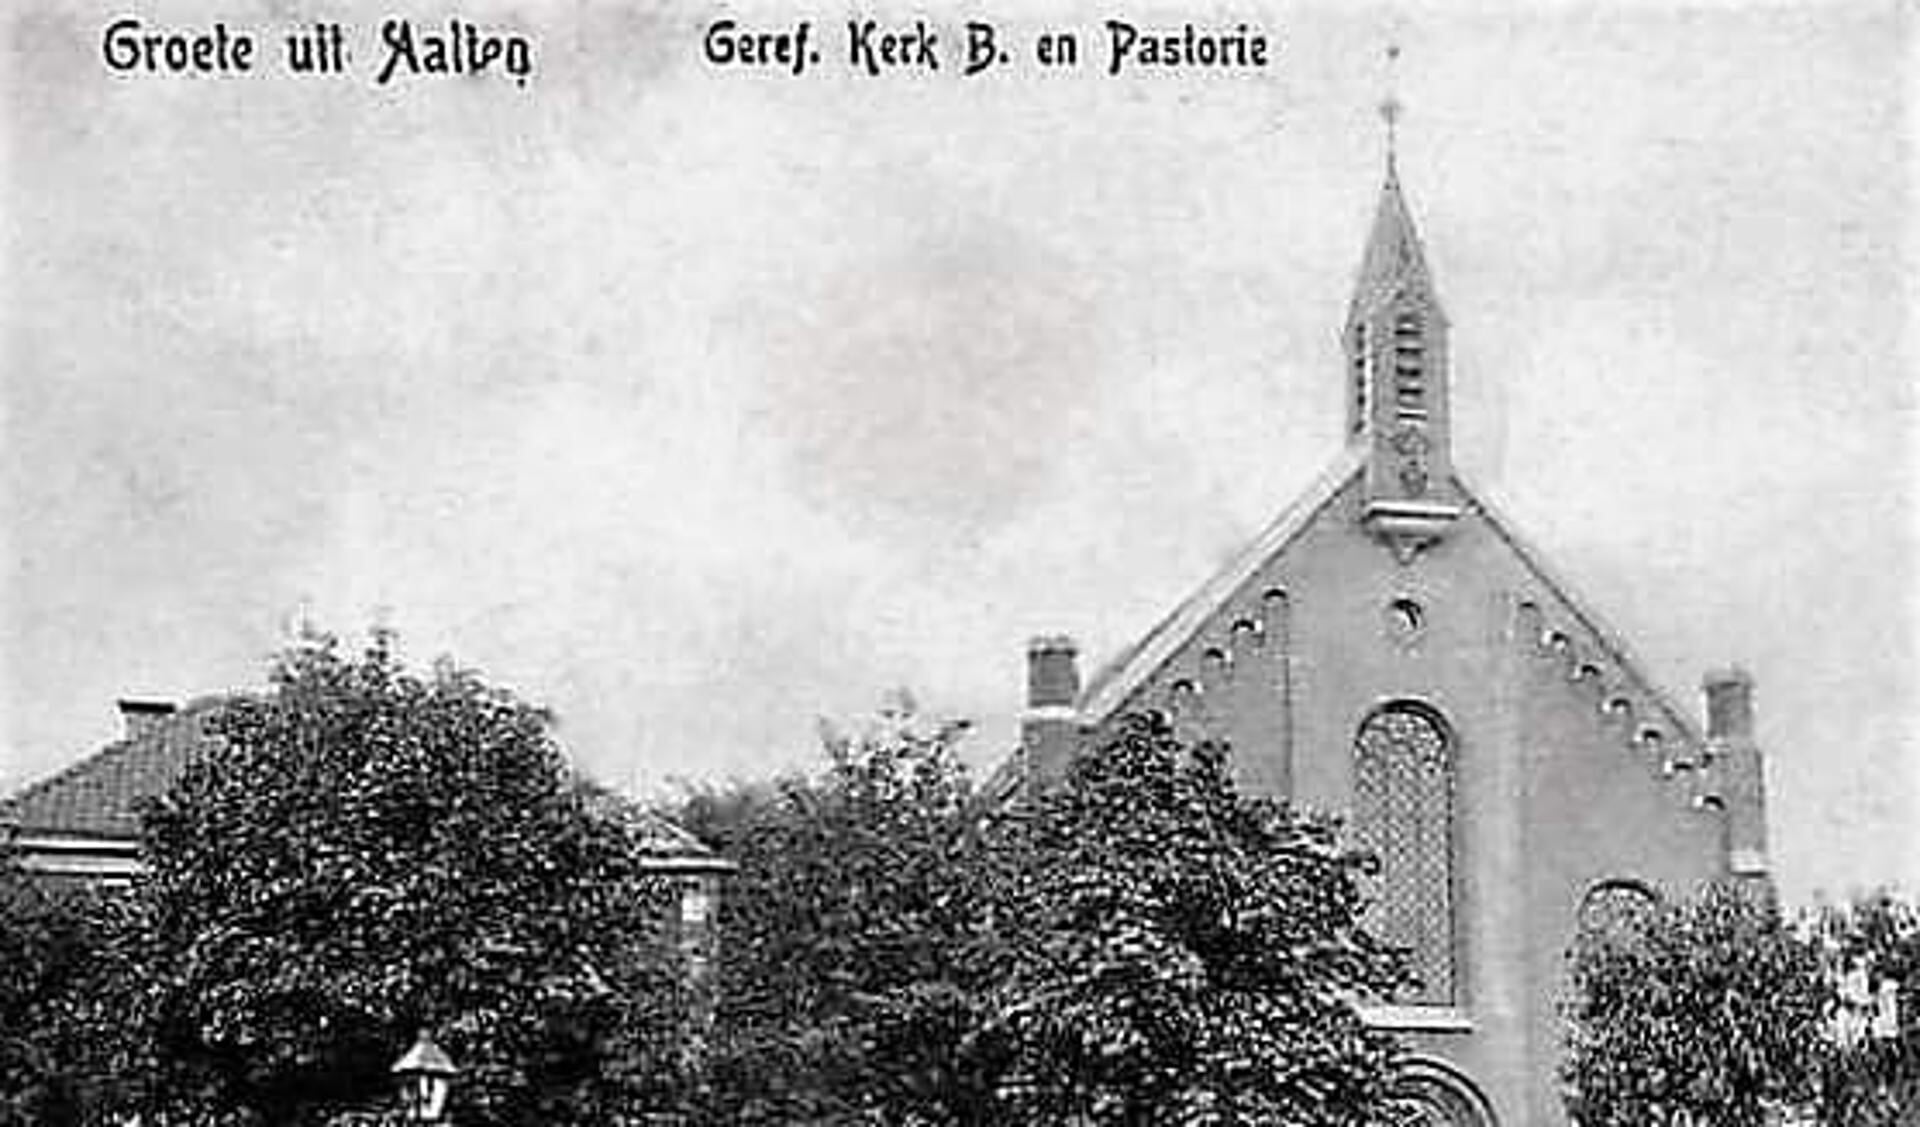 Westerkerk met pastorie, circa 1905. Foto: collectie Leo van der Linde